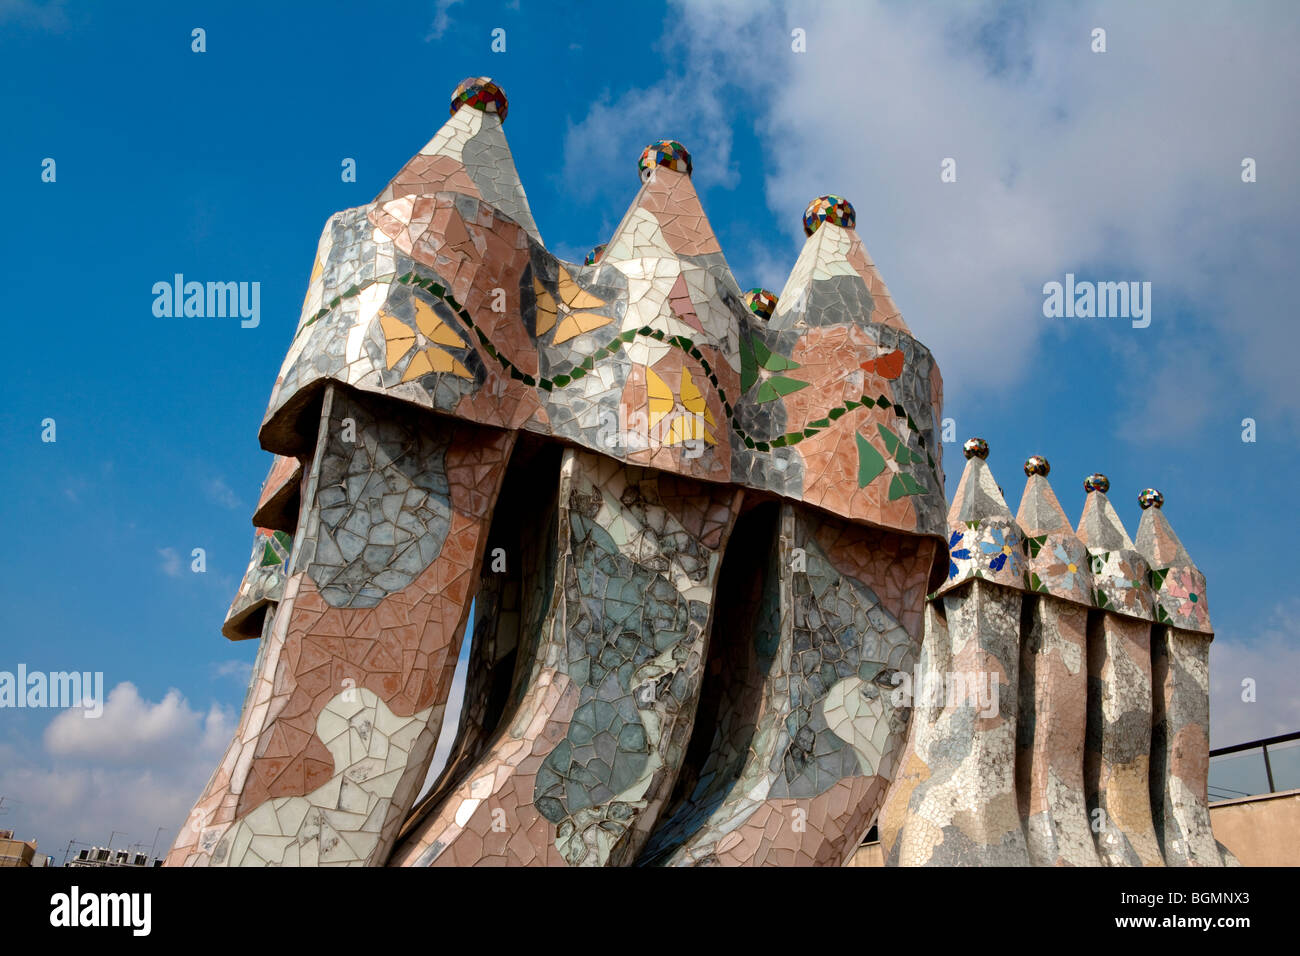 Barcelona - Spanisch-Art-Nouveau-Bewegung - Modernisme - Casa Batllo - Gaudi - Stadtteil Eixample Stockfoto